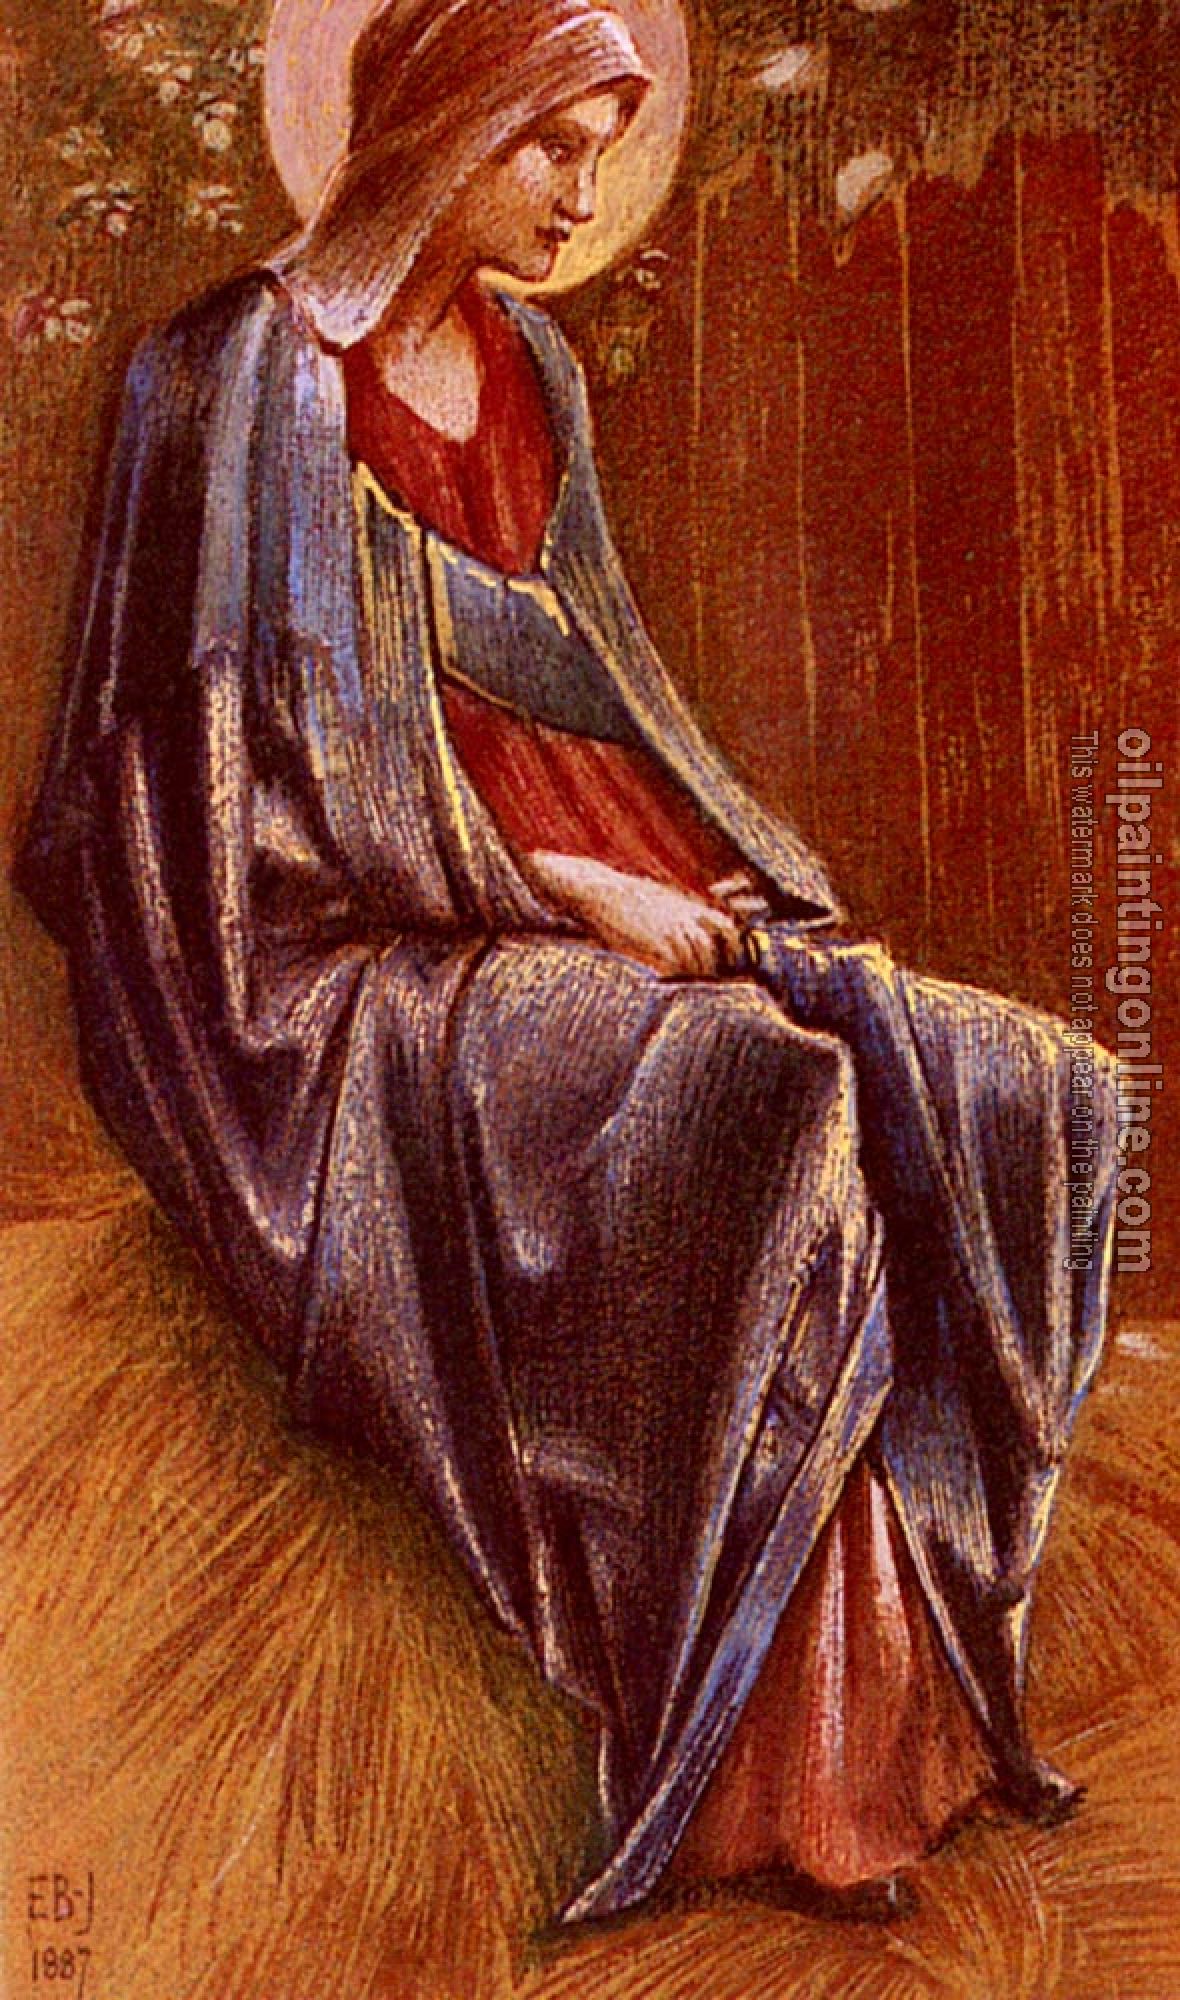 Burne-Jones, Sir Edward Coley - The Virgin